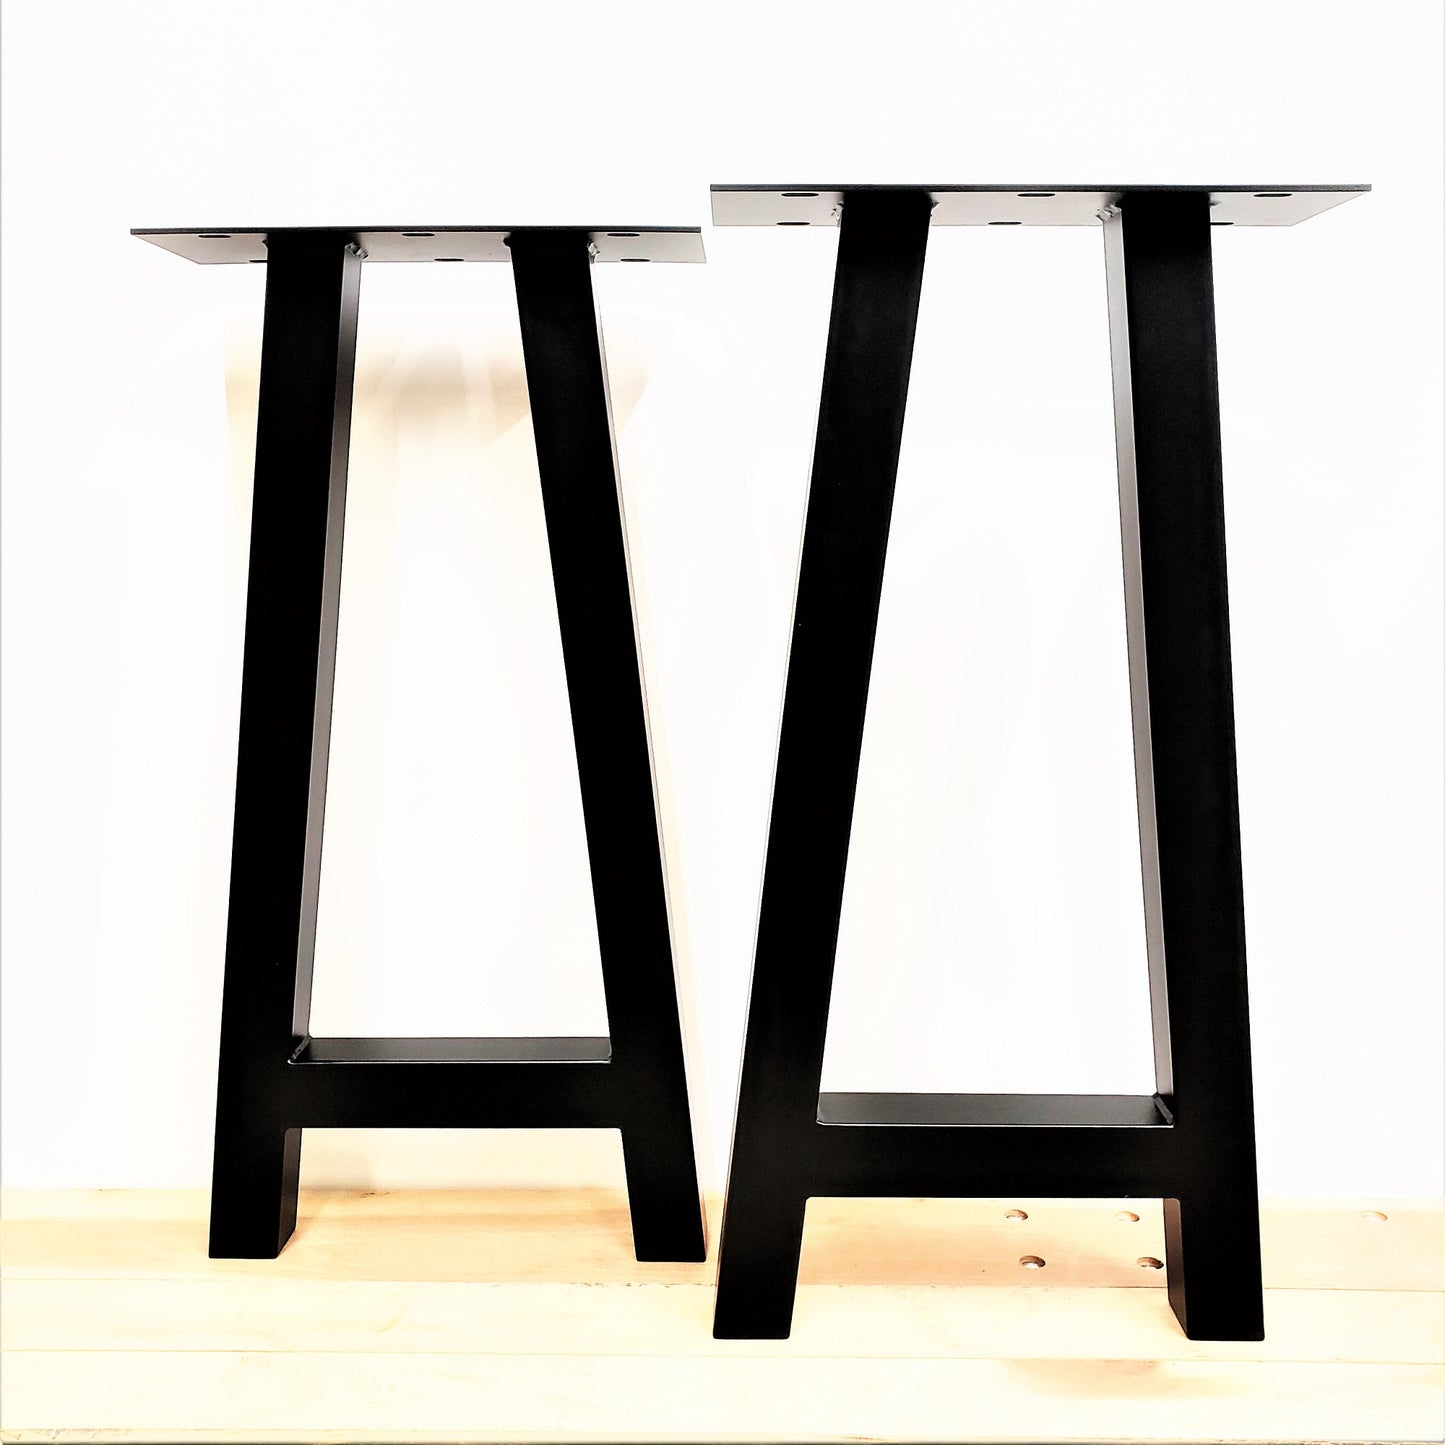 Furniture Legs, Metal Legs, Steel Legs, Coffee Table Legs, Hairpin Legs, Dining Table Legs